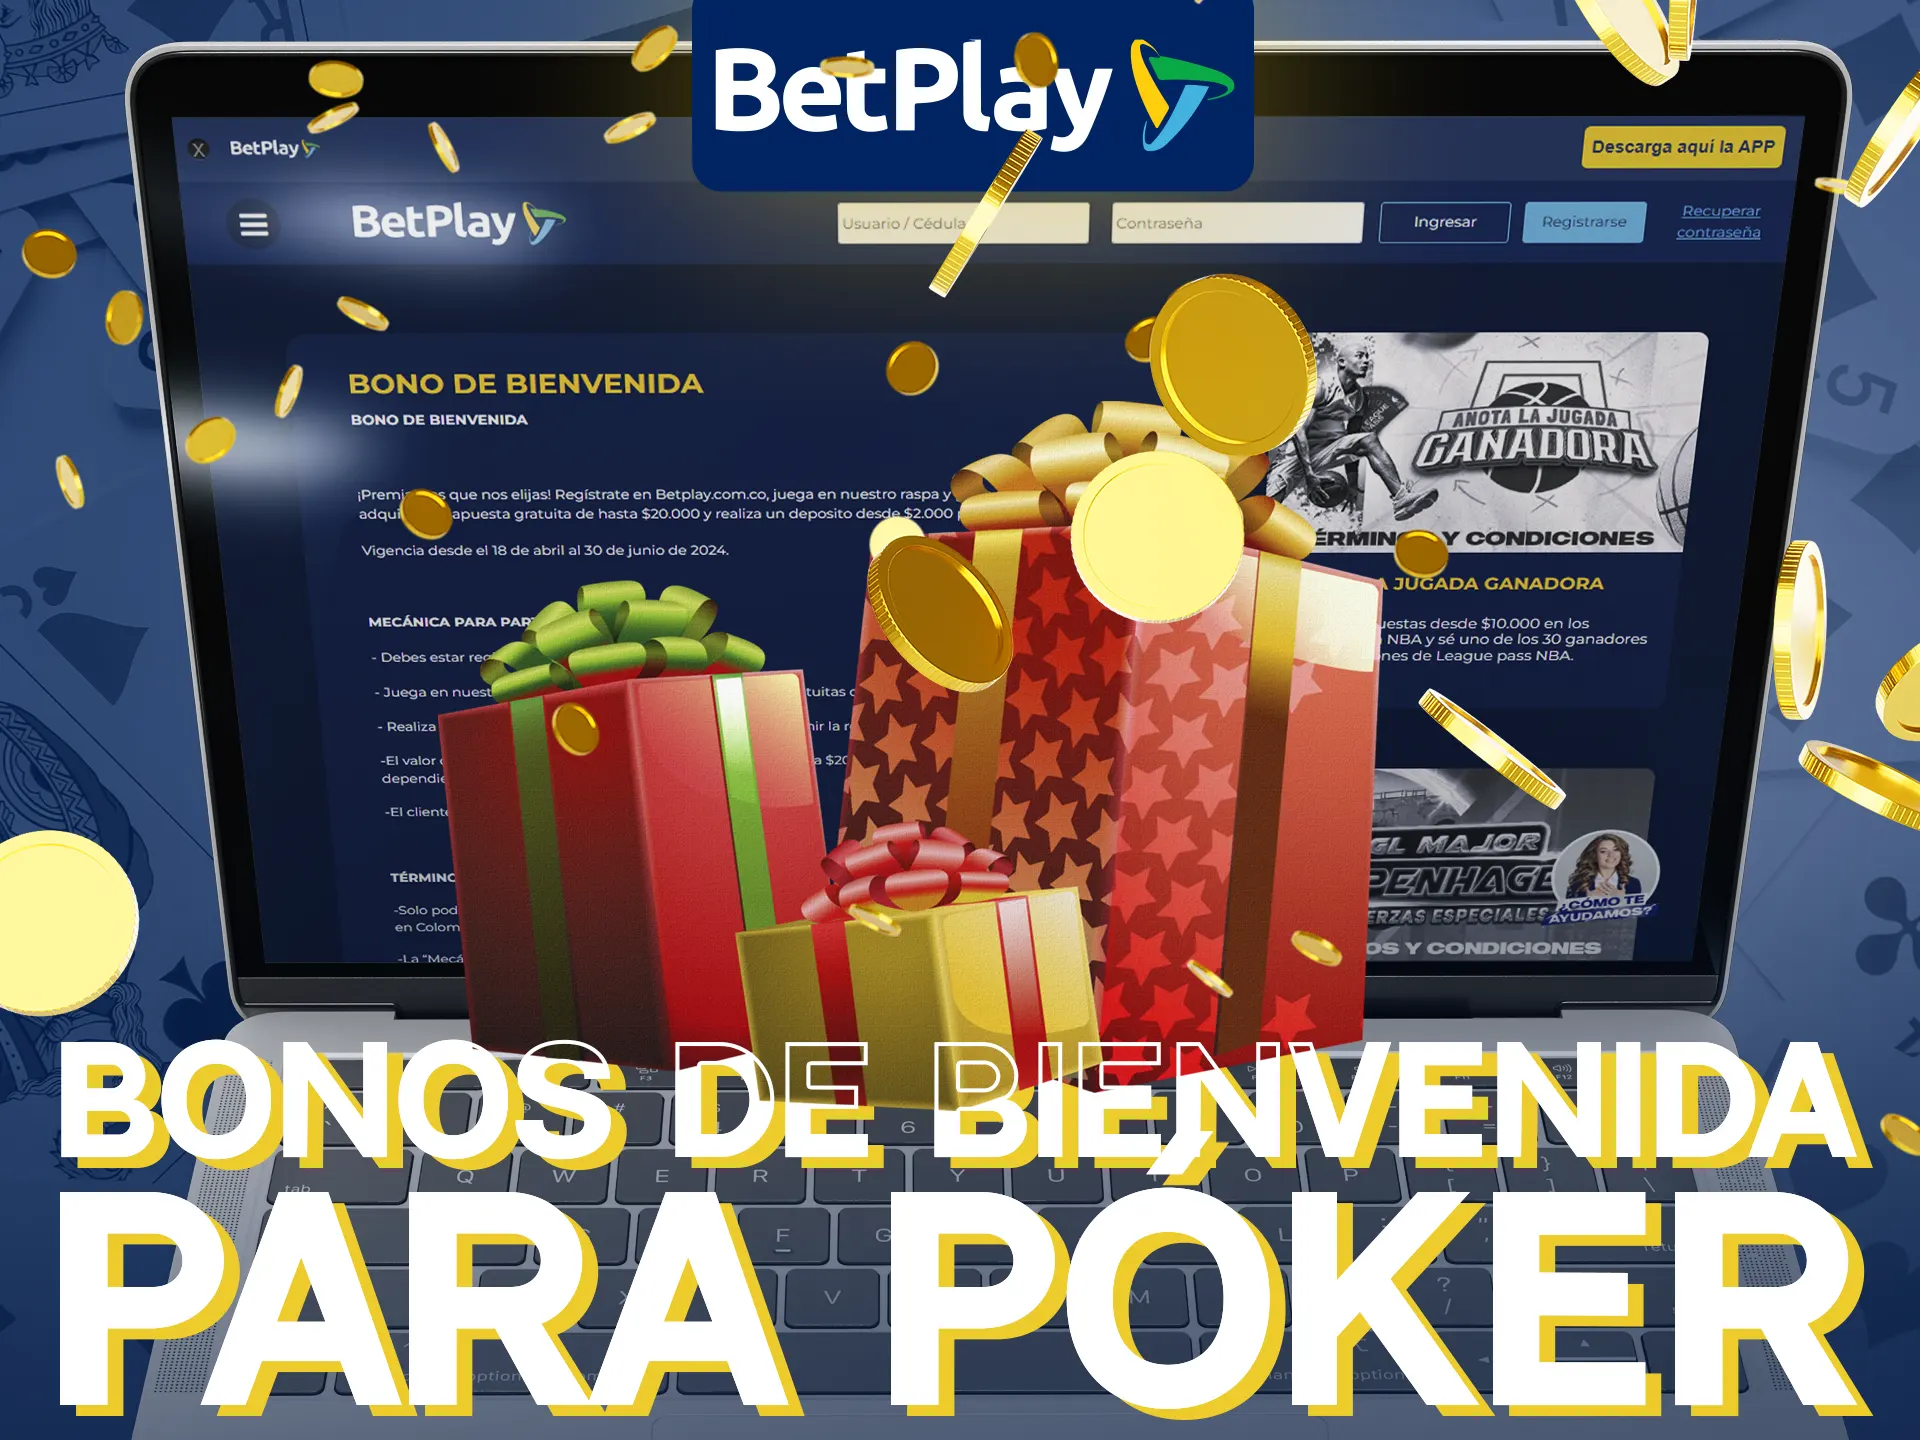 Utiliza los bonos de poker en BetPlay especiales para jugadores colombianos.